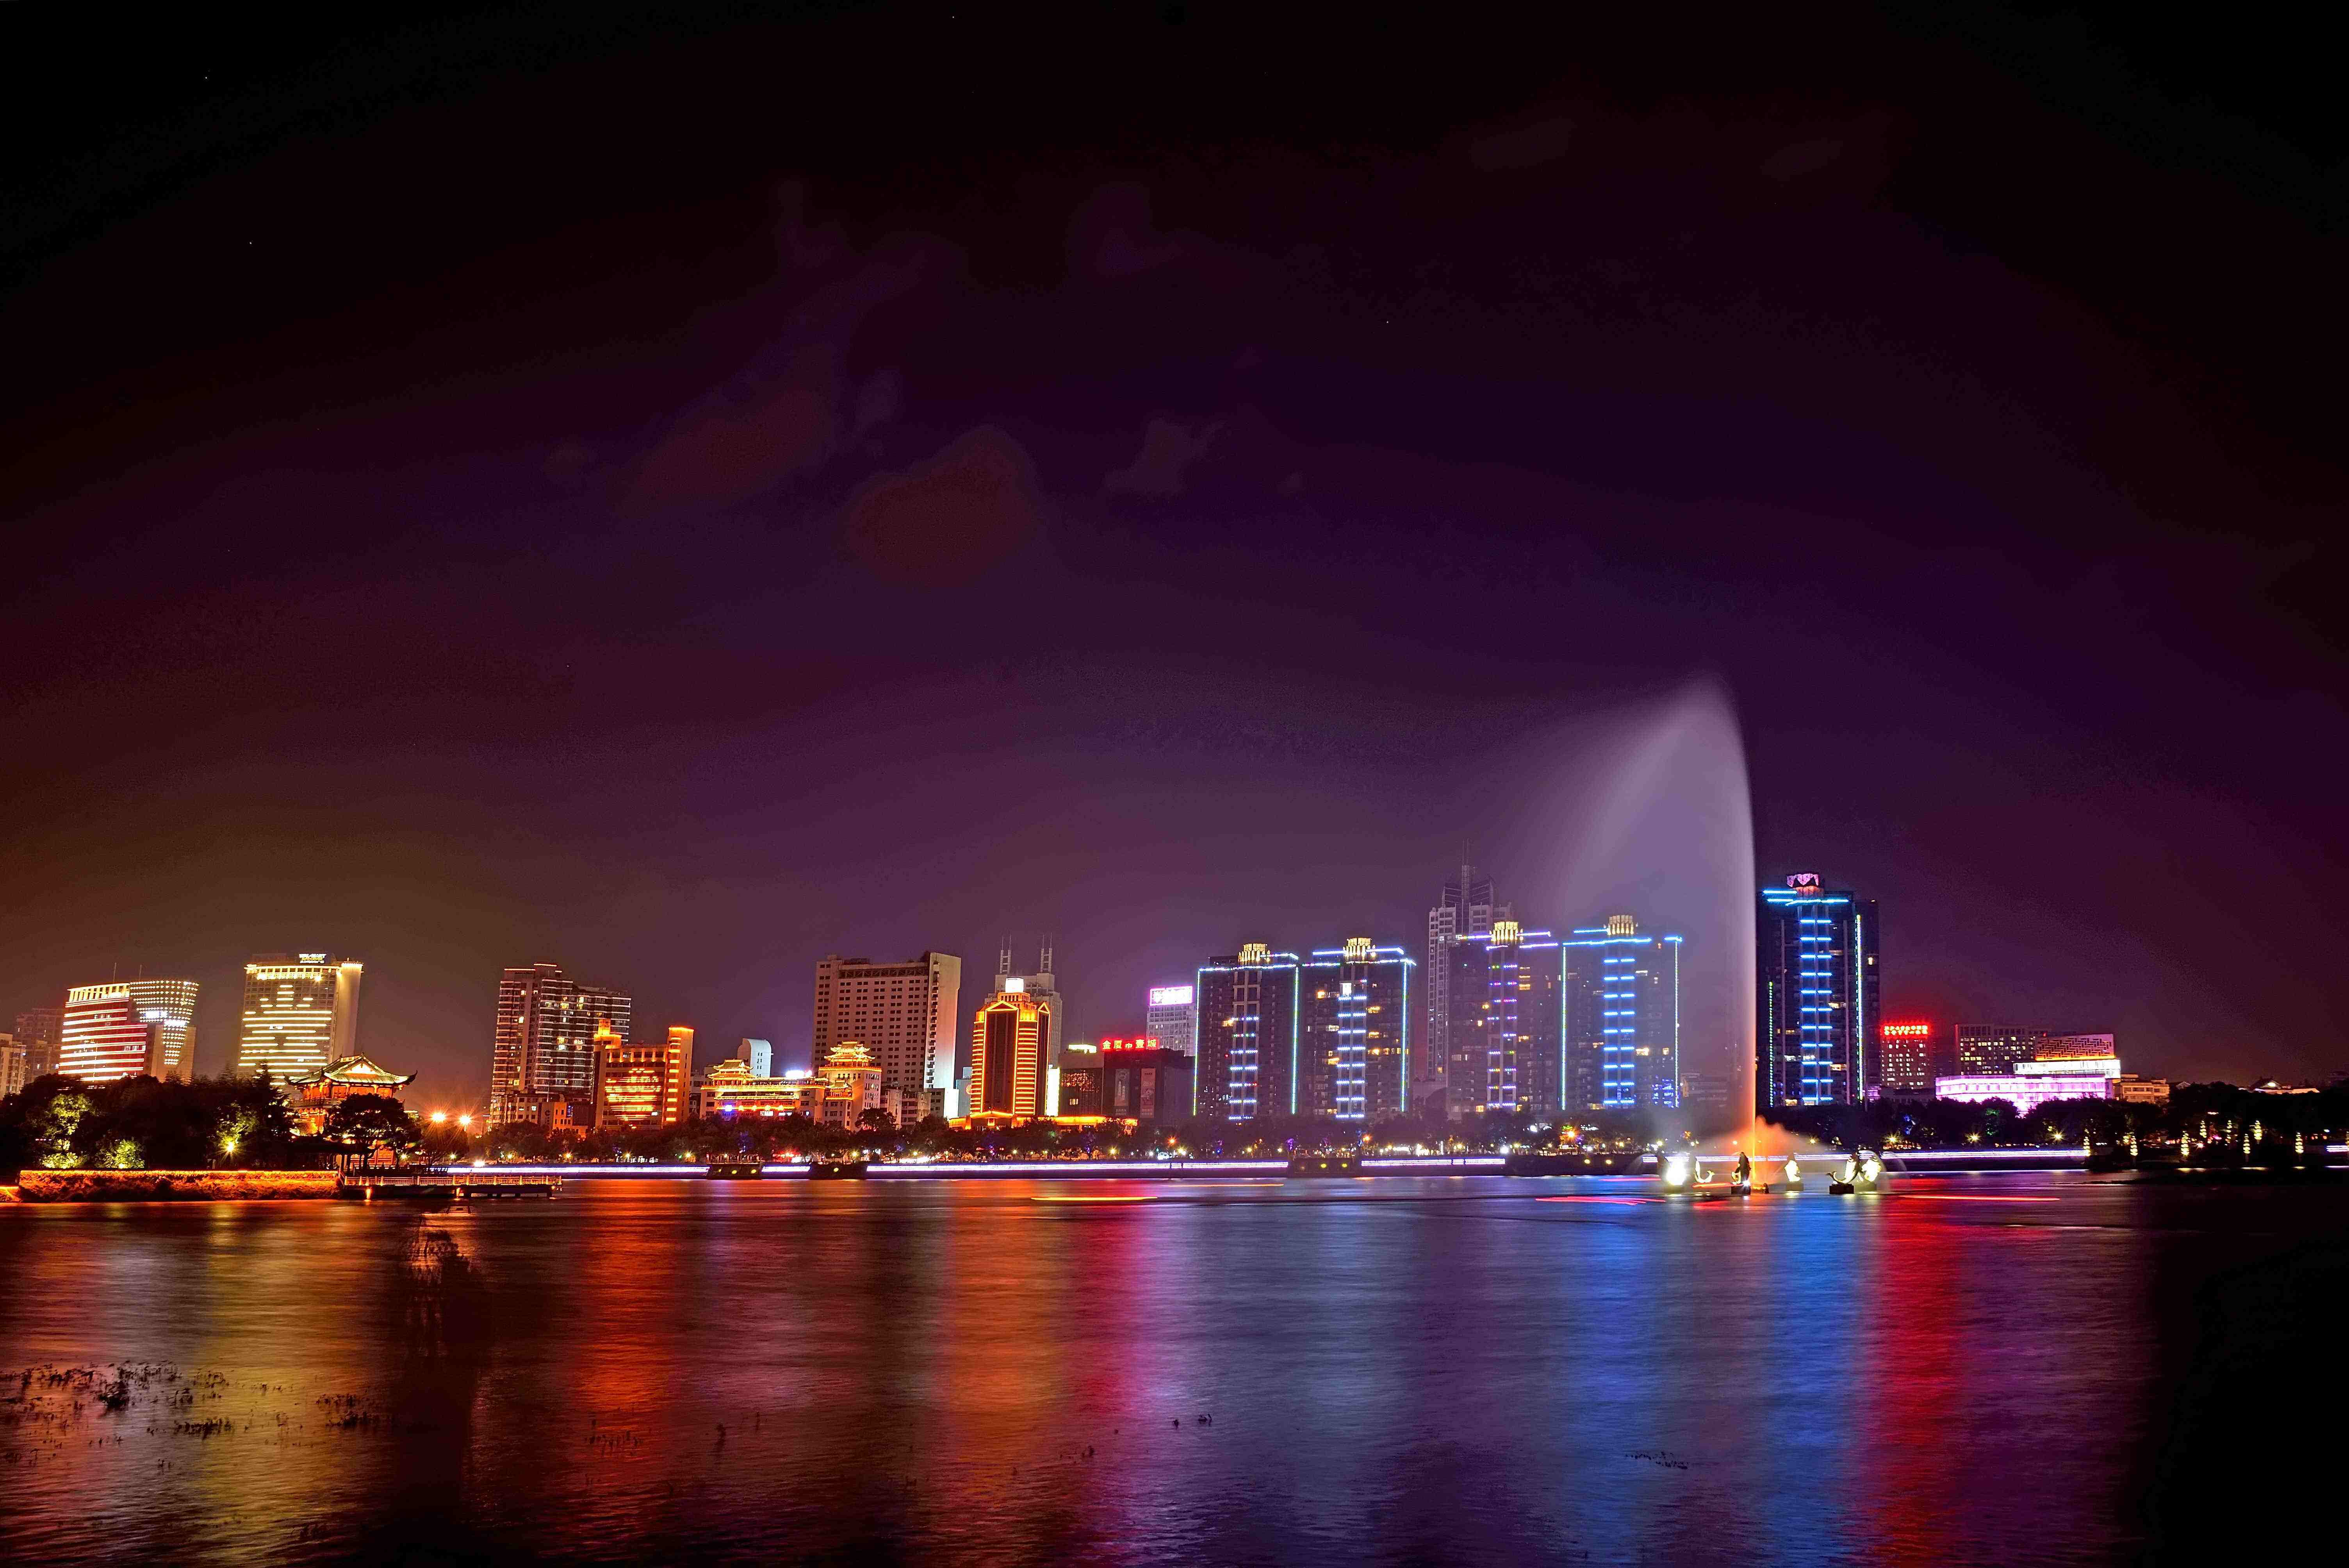 中国十佳宜居城市排名:珠海连续四年第一,广西省有两座城市上榜